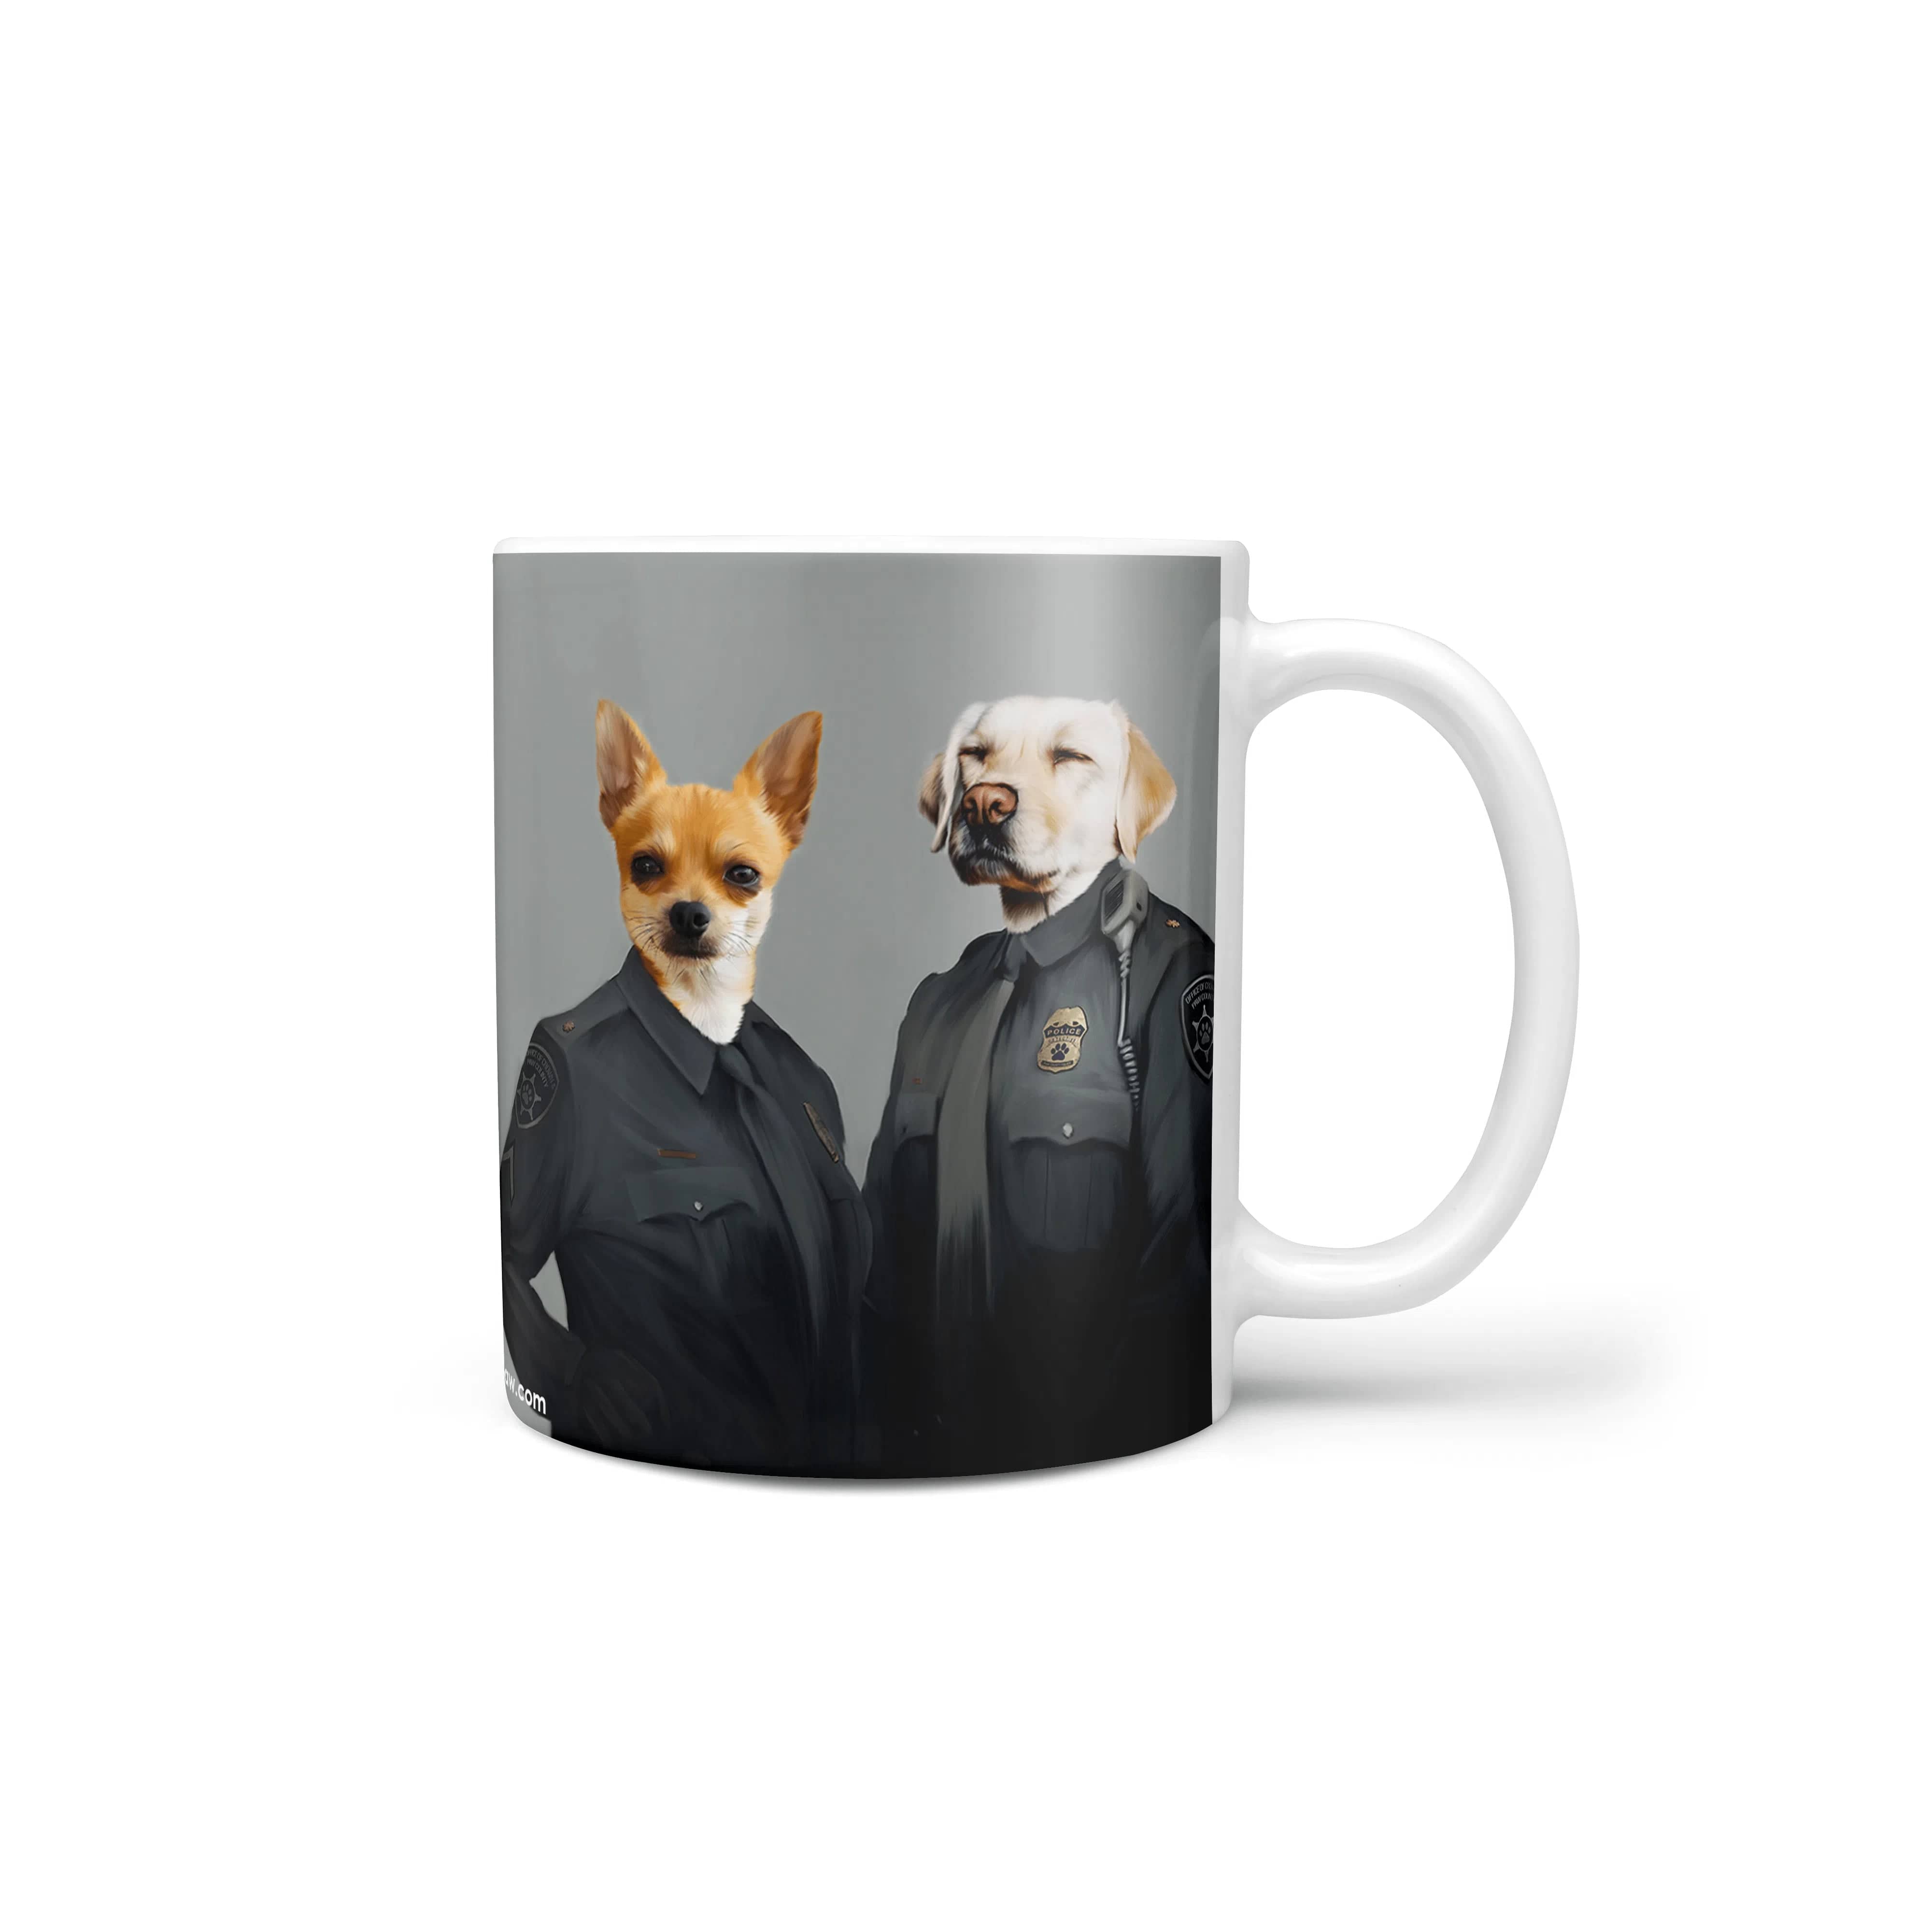 The Officers - Custom Mug